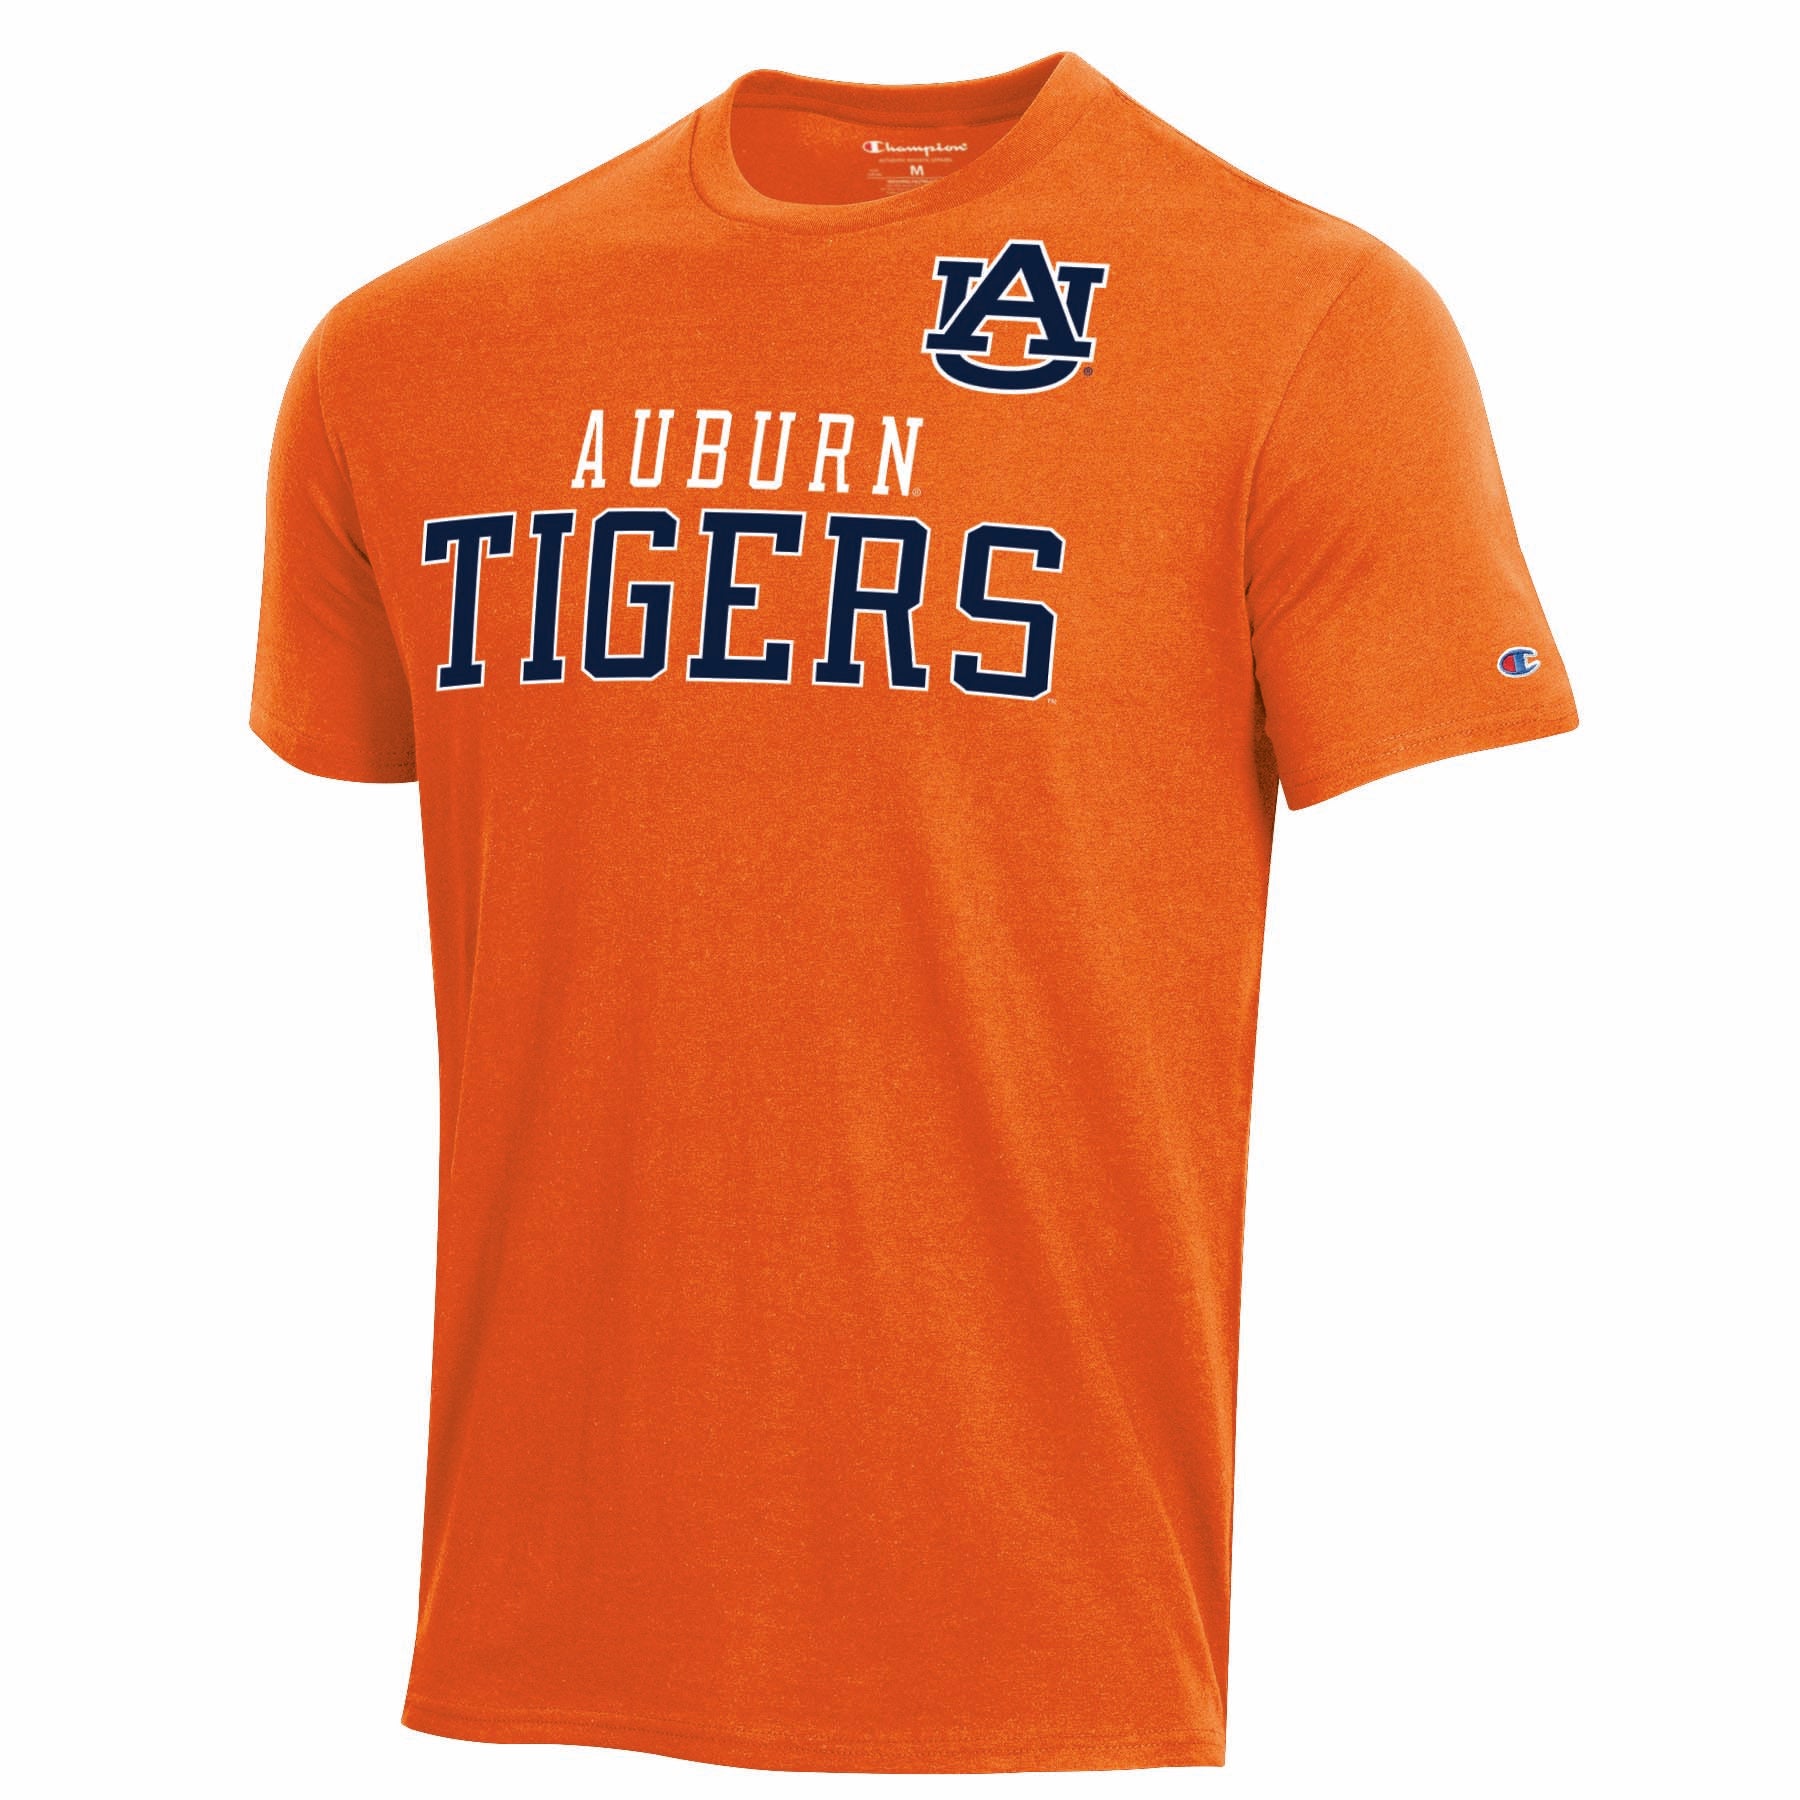 Champion Brand "Auburn" Men's Short Sleeve T